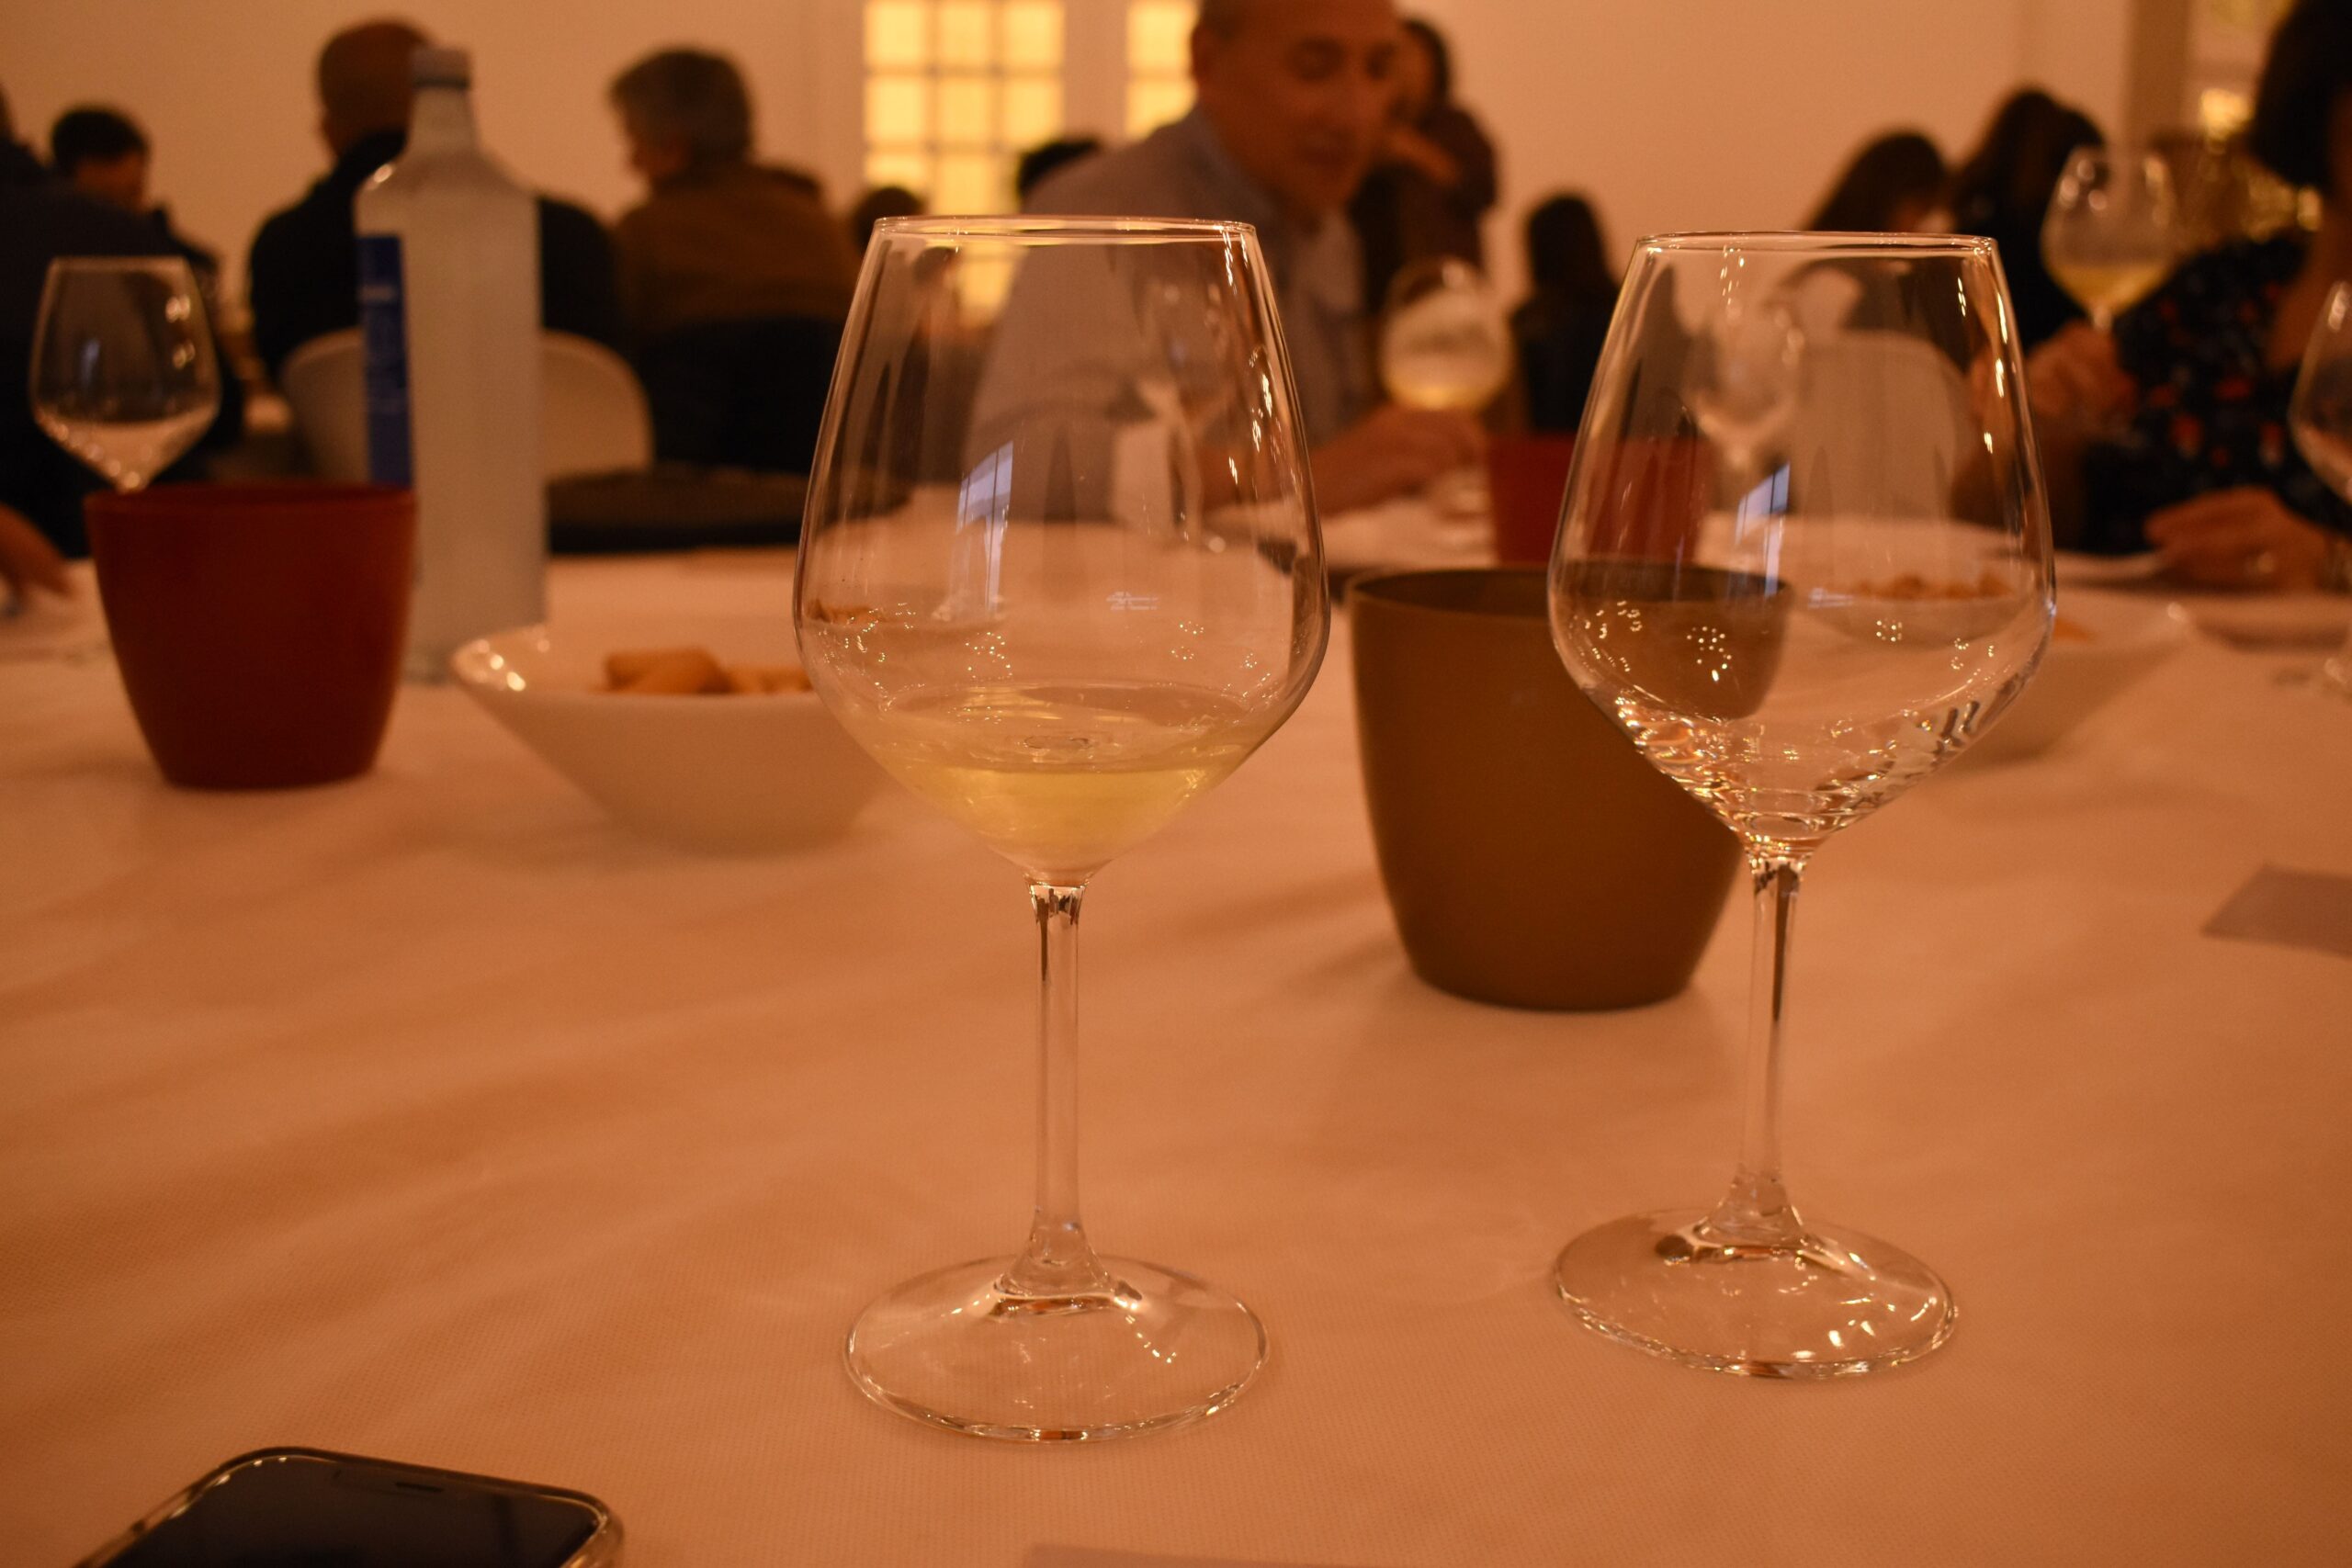 Cata de vinos Club de Campo Ferrol 03